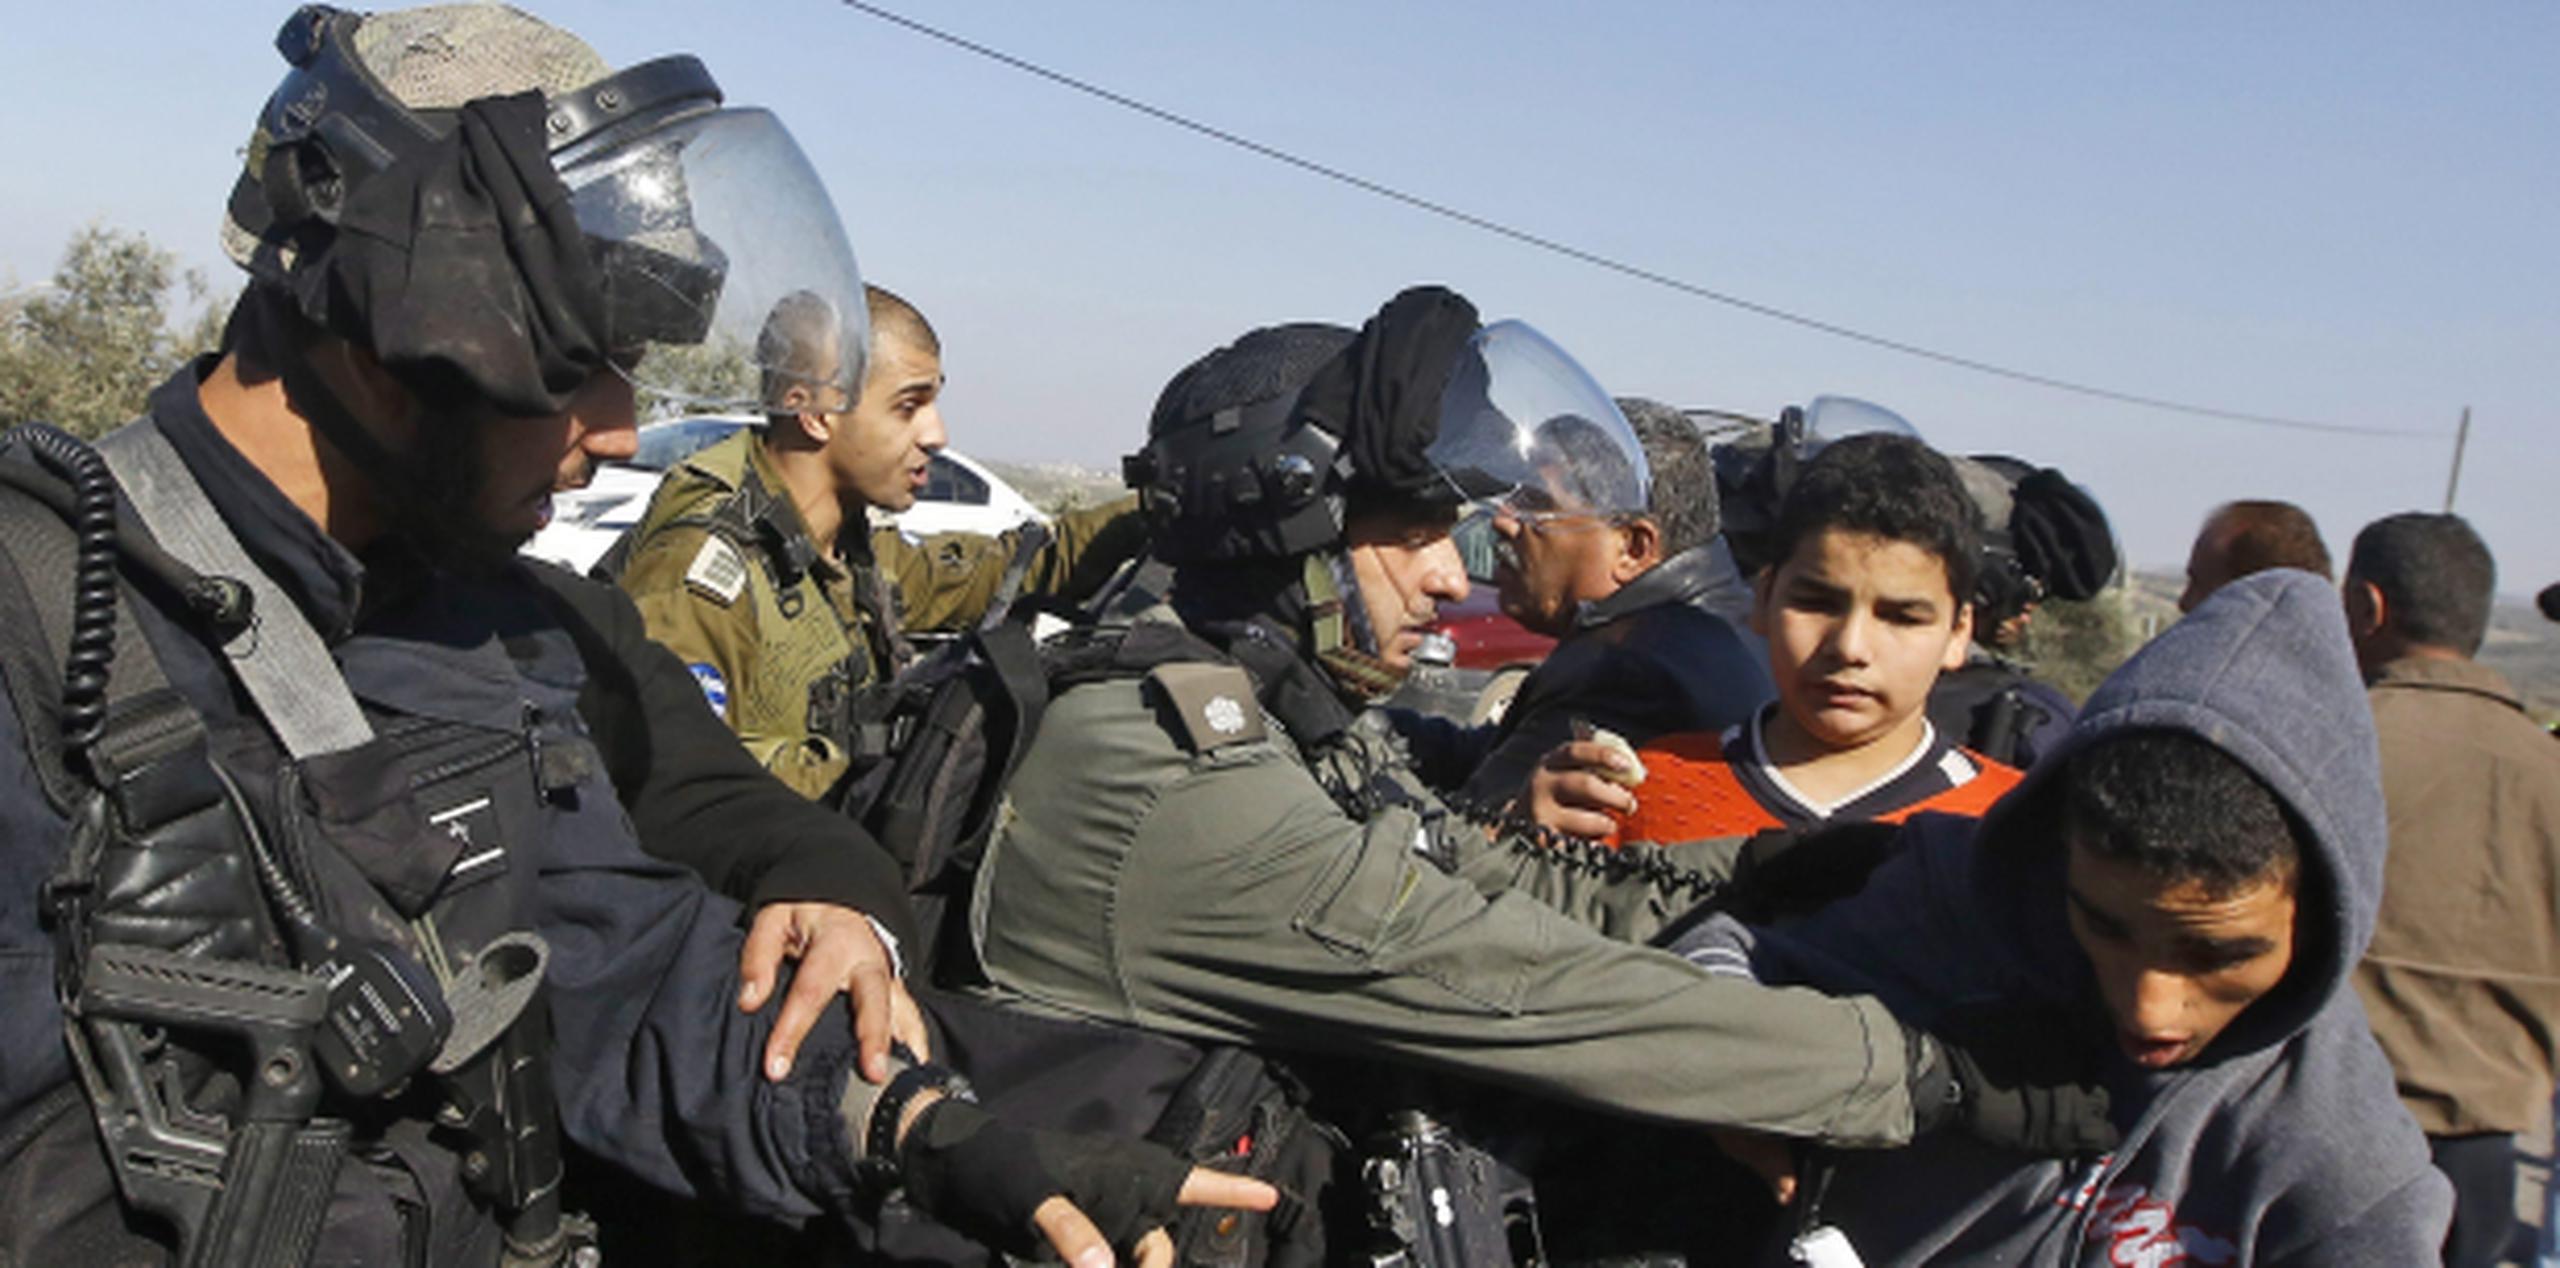 El ataque con el camión ocurre a horas de este encontronazo entre soldados israelíes y jóvenes palestinos en una manifestación. (EFE)